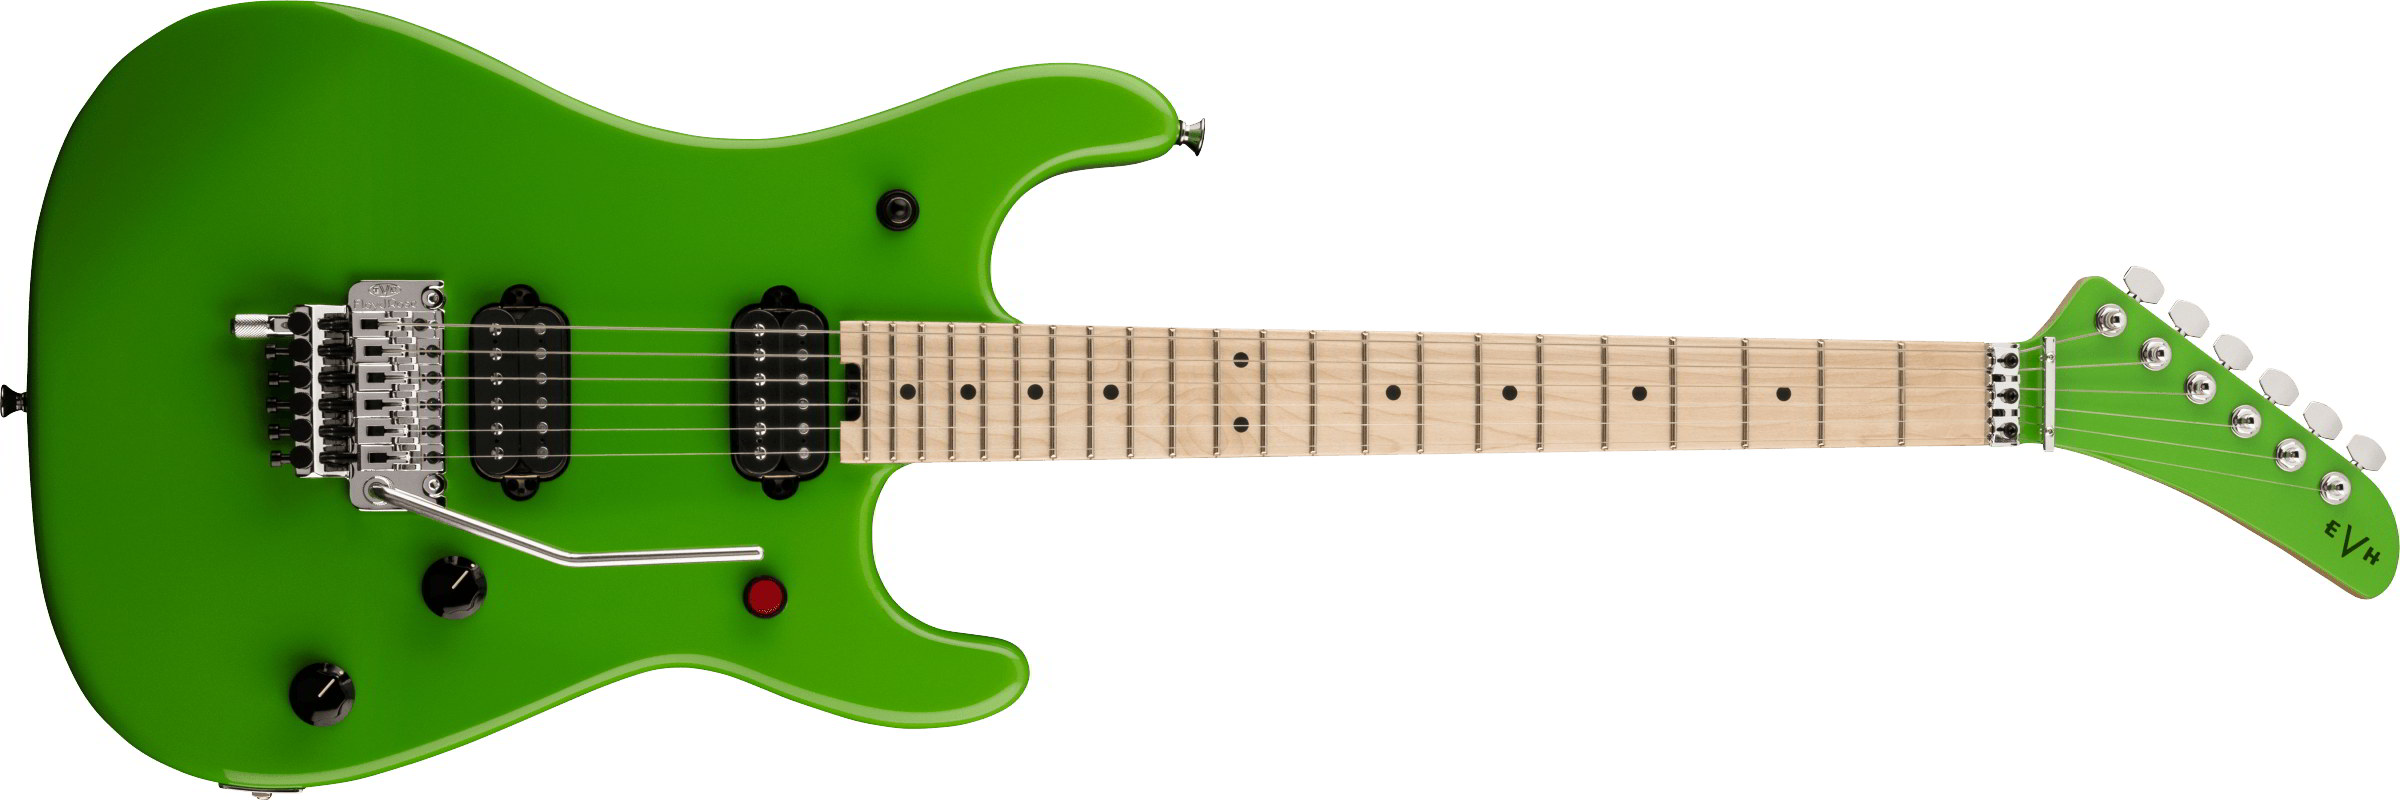 EVH 5150 Series Guitarsシリーズ エレキギター5150™ Series